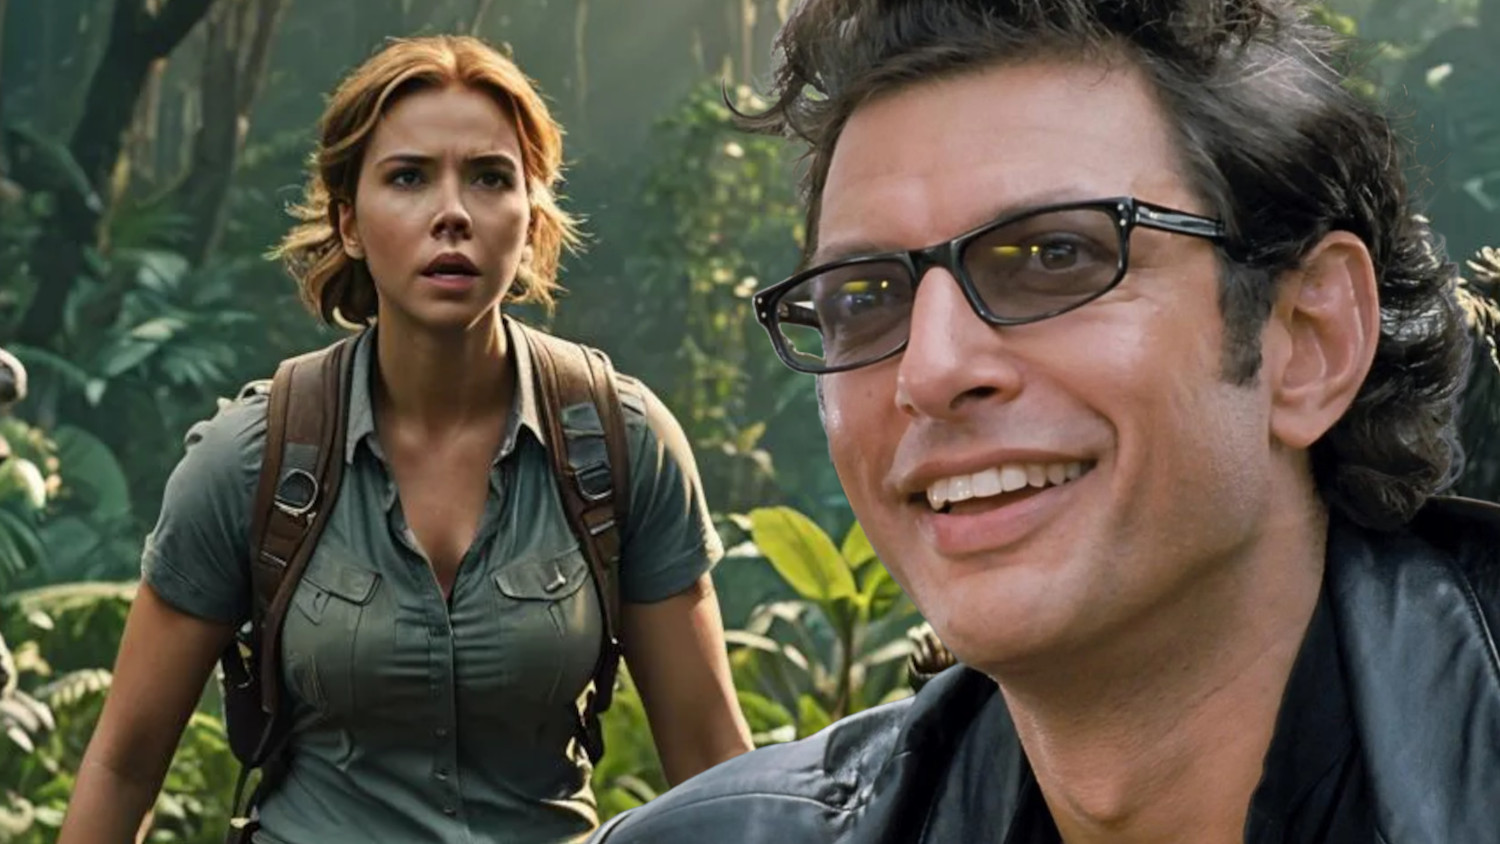 Watch: Jeff Goldblum Welcomes Scarlett Johansson To Jurassic World